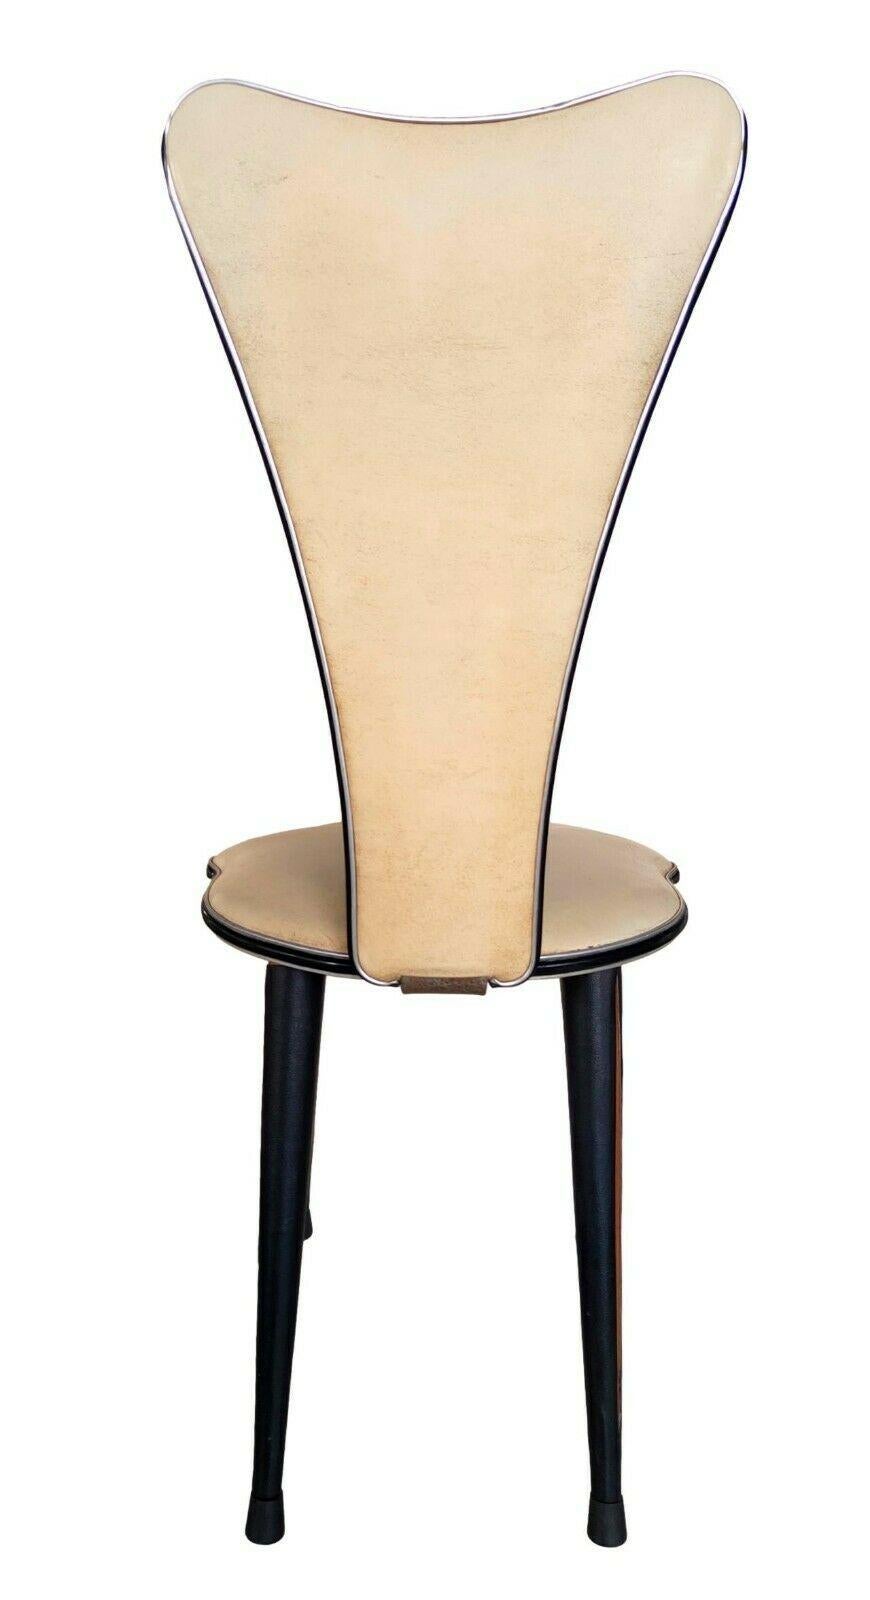 Ensemble de quatre chaises originales des années 60, production et design par umberto mascagni

structure en bois massif avec revêtement en éco-cuir couleur sable, finitions en aluminium, pieds en caoutchouc noir

Très bon état, comme indiqué